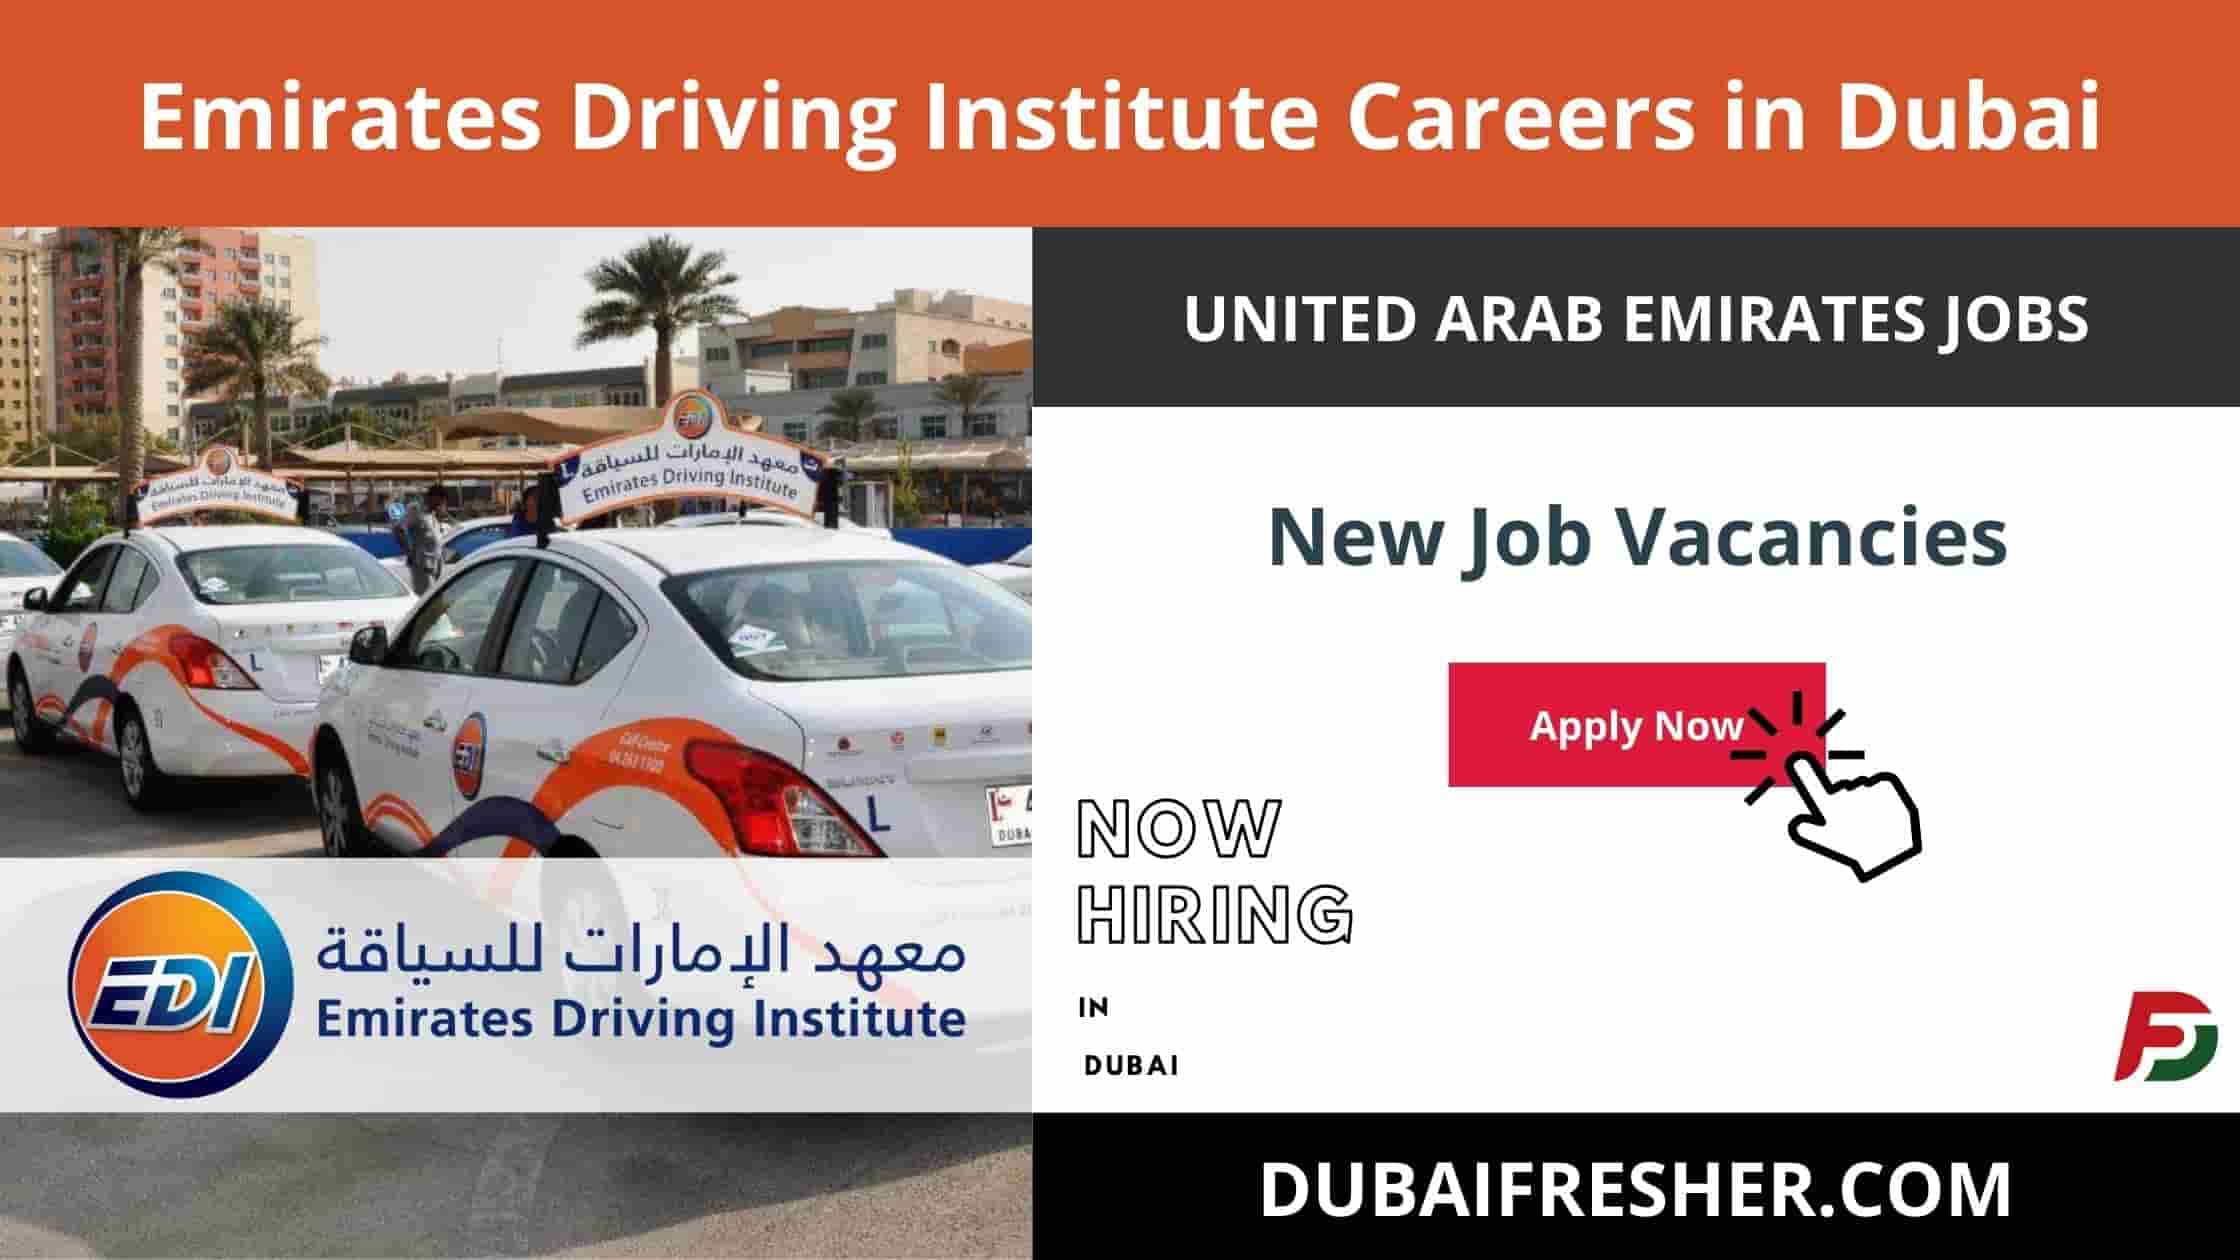 Emirates Driving Institute Careers in Dubai